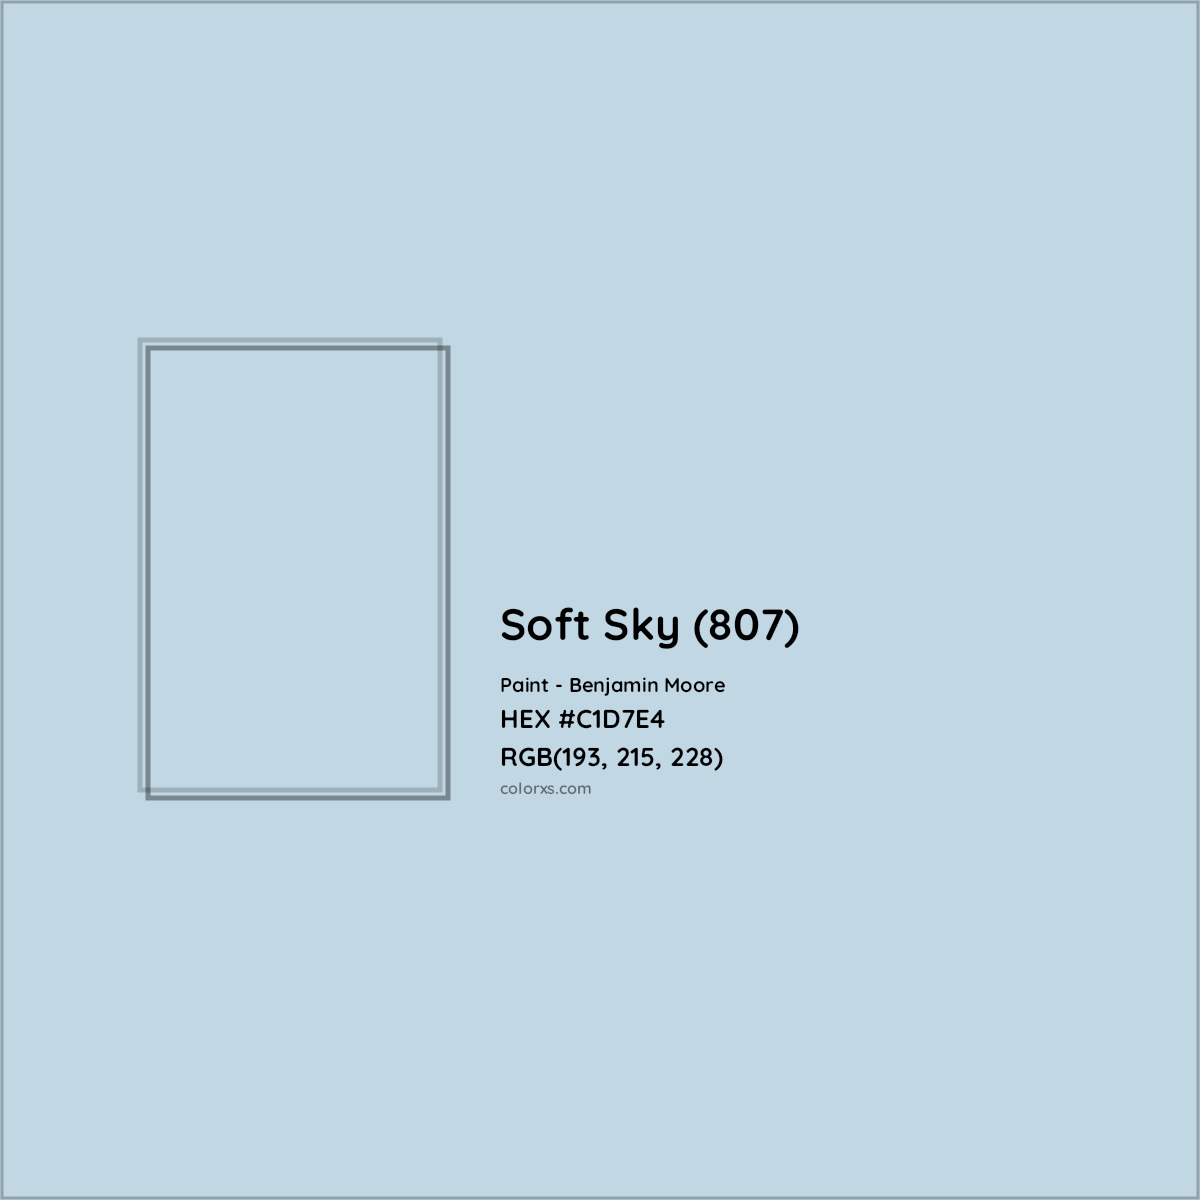 HEX #C1D7E4 Soft Sky (807) Paint Benjamin Moore - Color Code